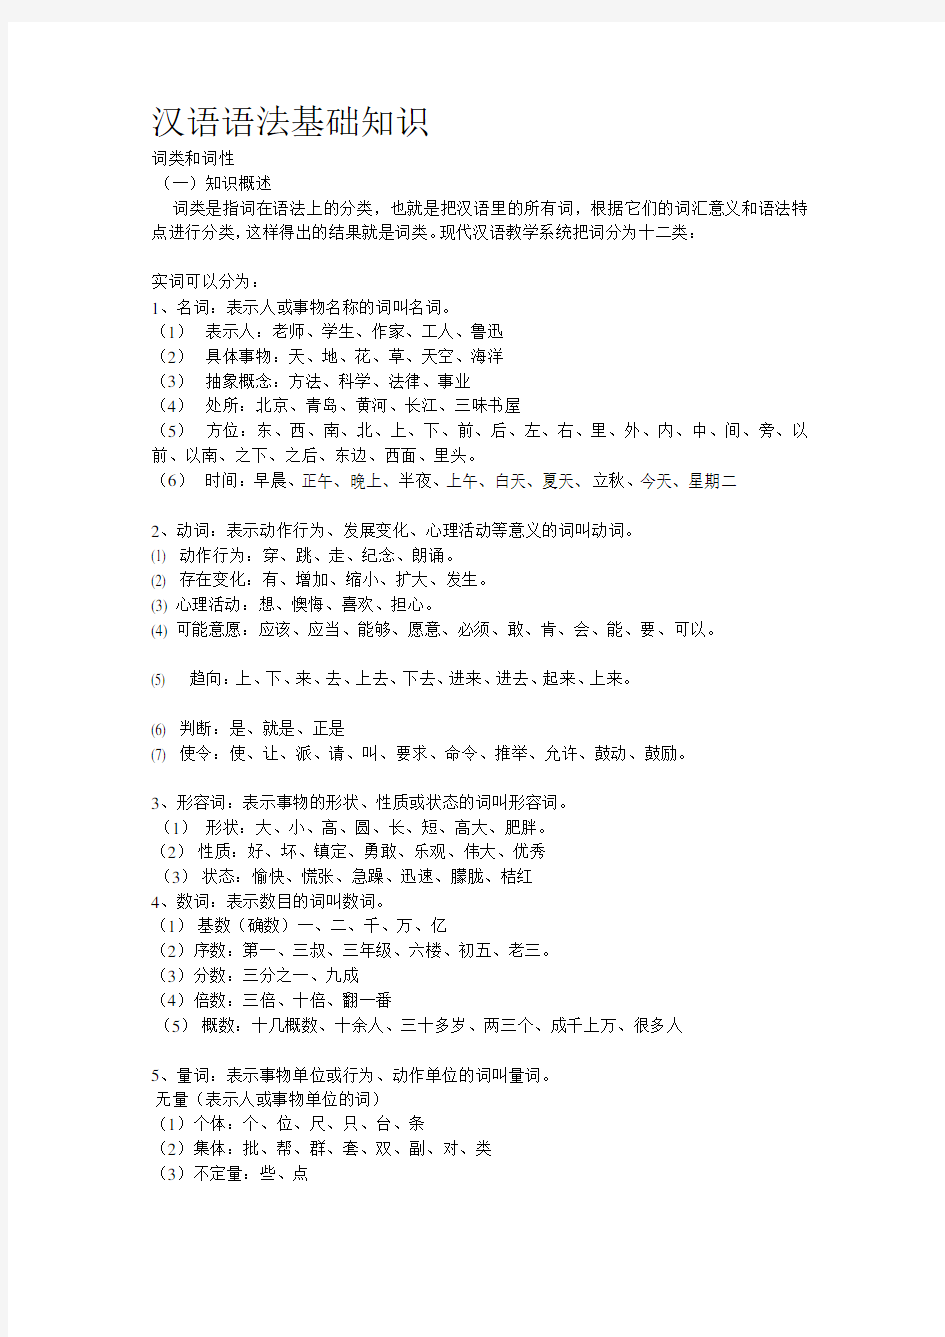 汉语语法基础知识(完整版)[整理版]